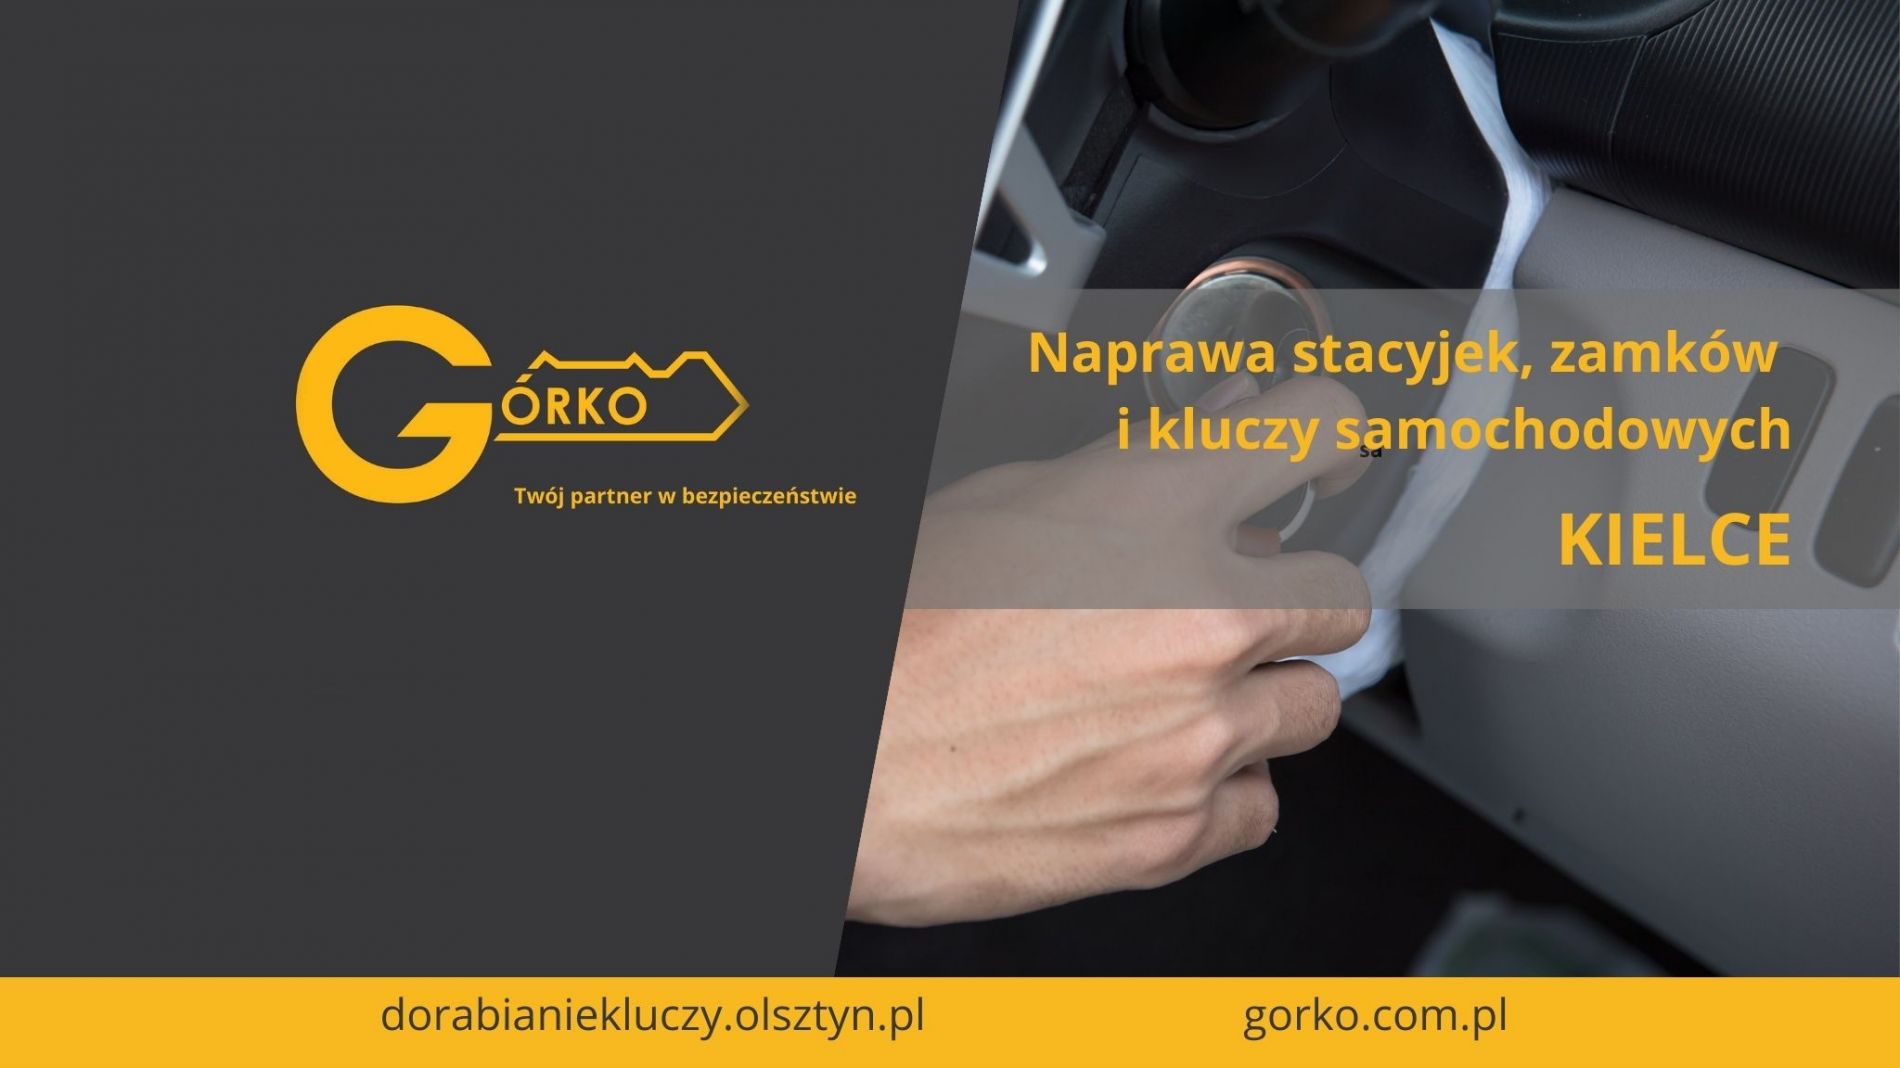 Naprawa stacyjek, zamków i kluczy samochodowych – Kielce (Usługa zdalna)